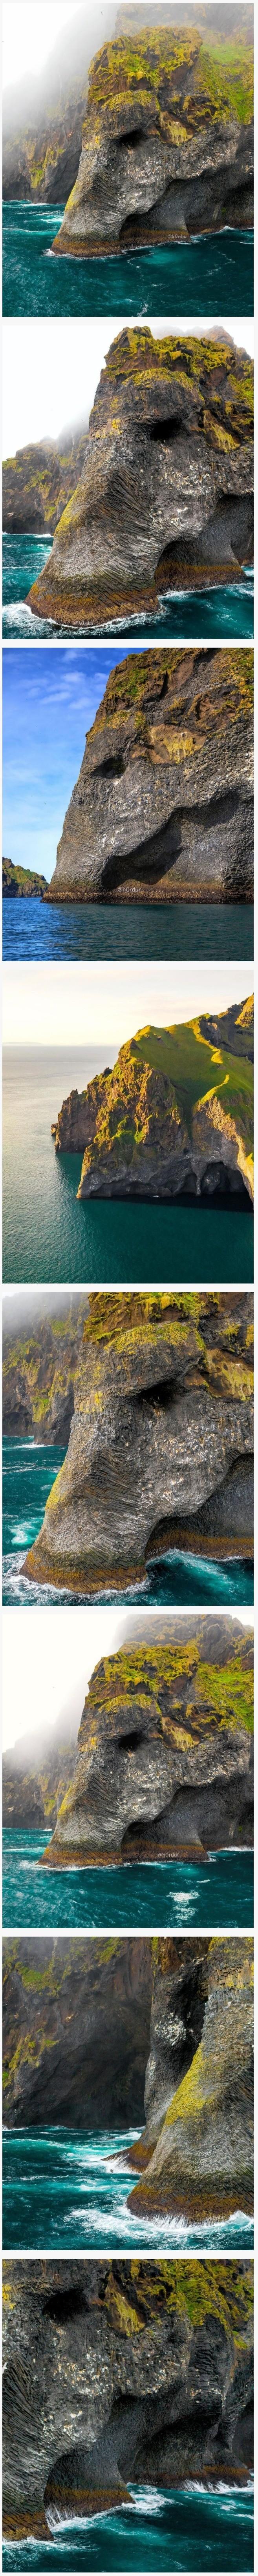 아이슬란드의 코끼리 바위 ㄷㄷ